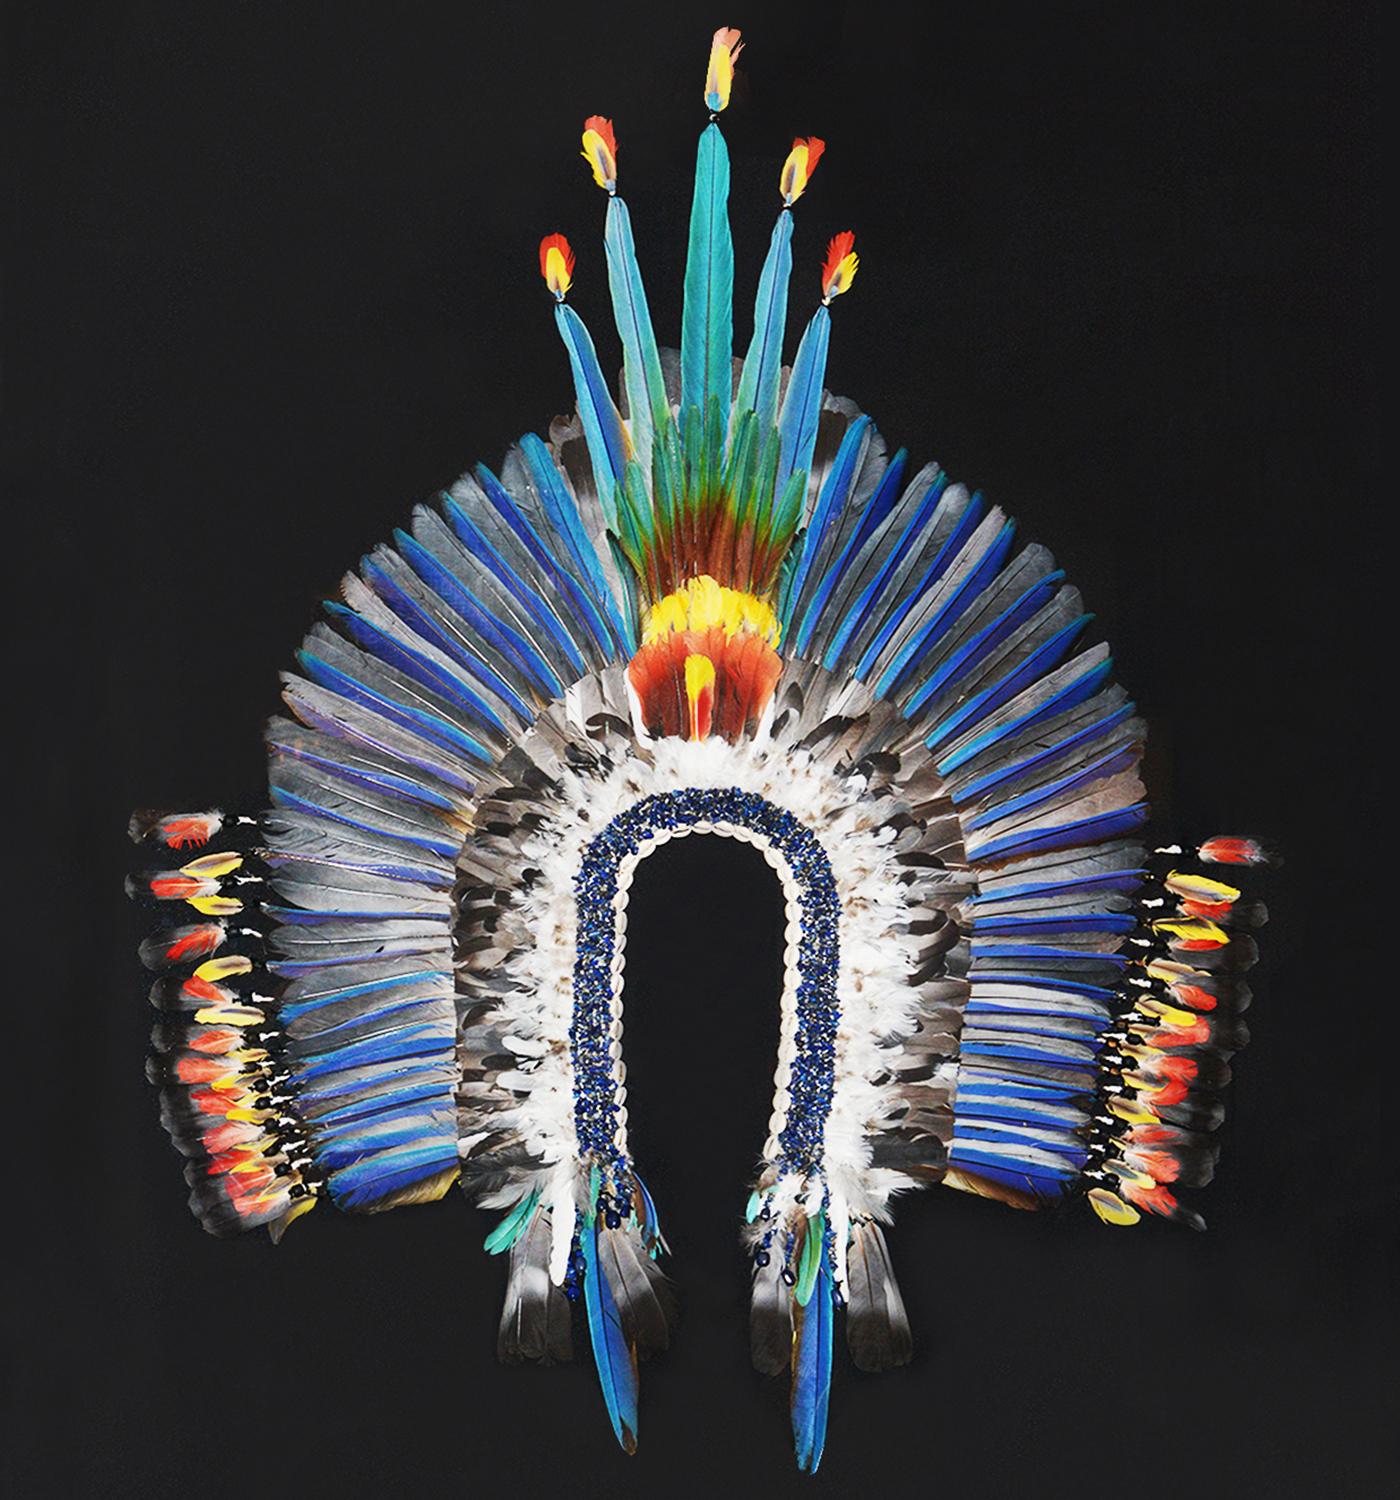 Kayapo Style Artwork Kopfschmuck unter Rahmen mit blauen gemacht 
Arafedern und andere südamerikanische Vogelfedern. 
Wird mit Zitaten geliefert.
